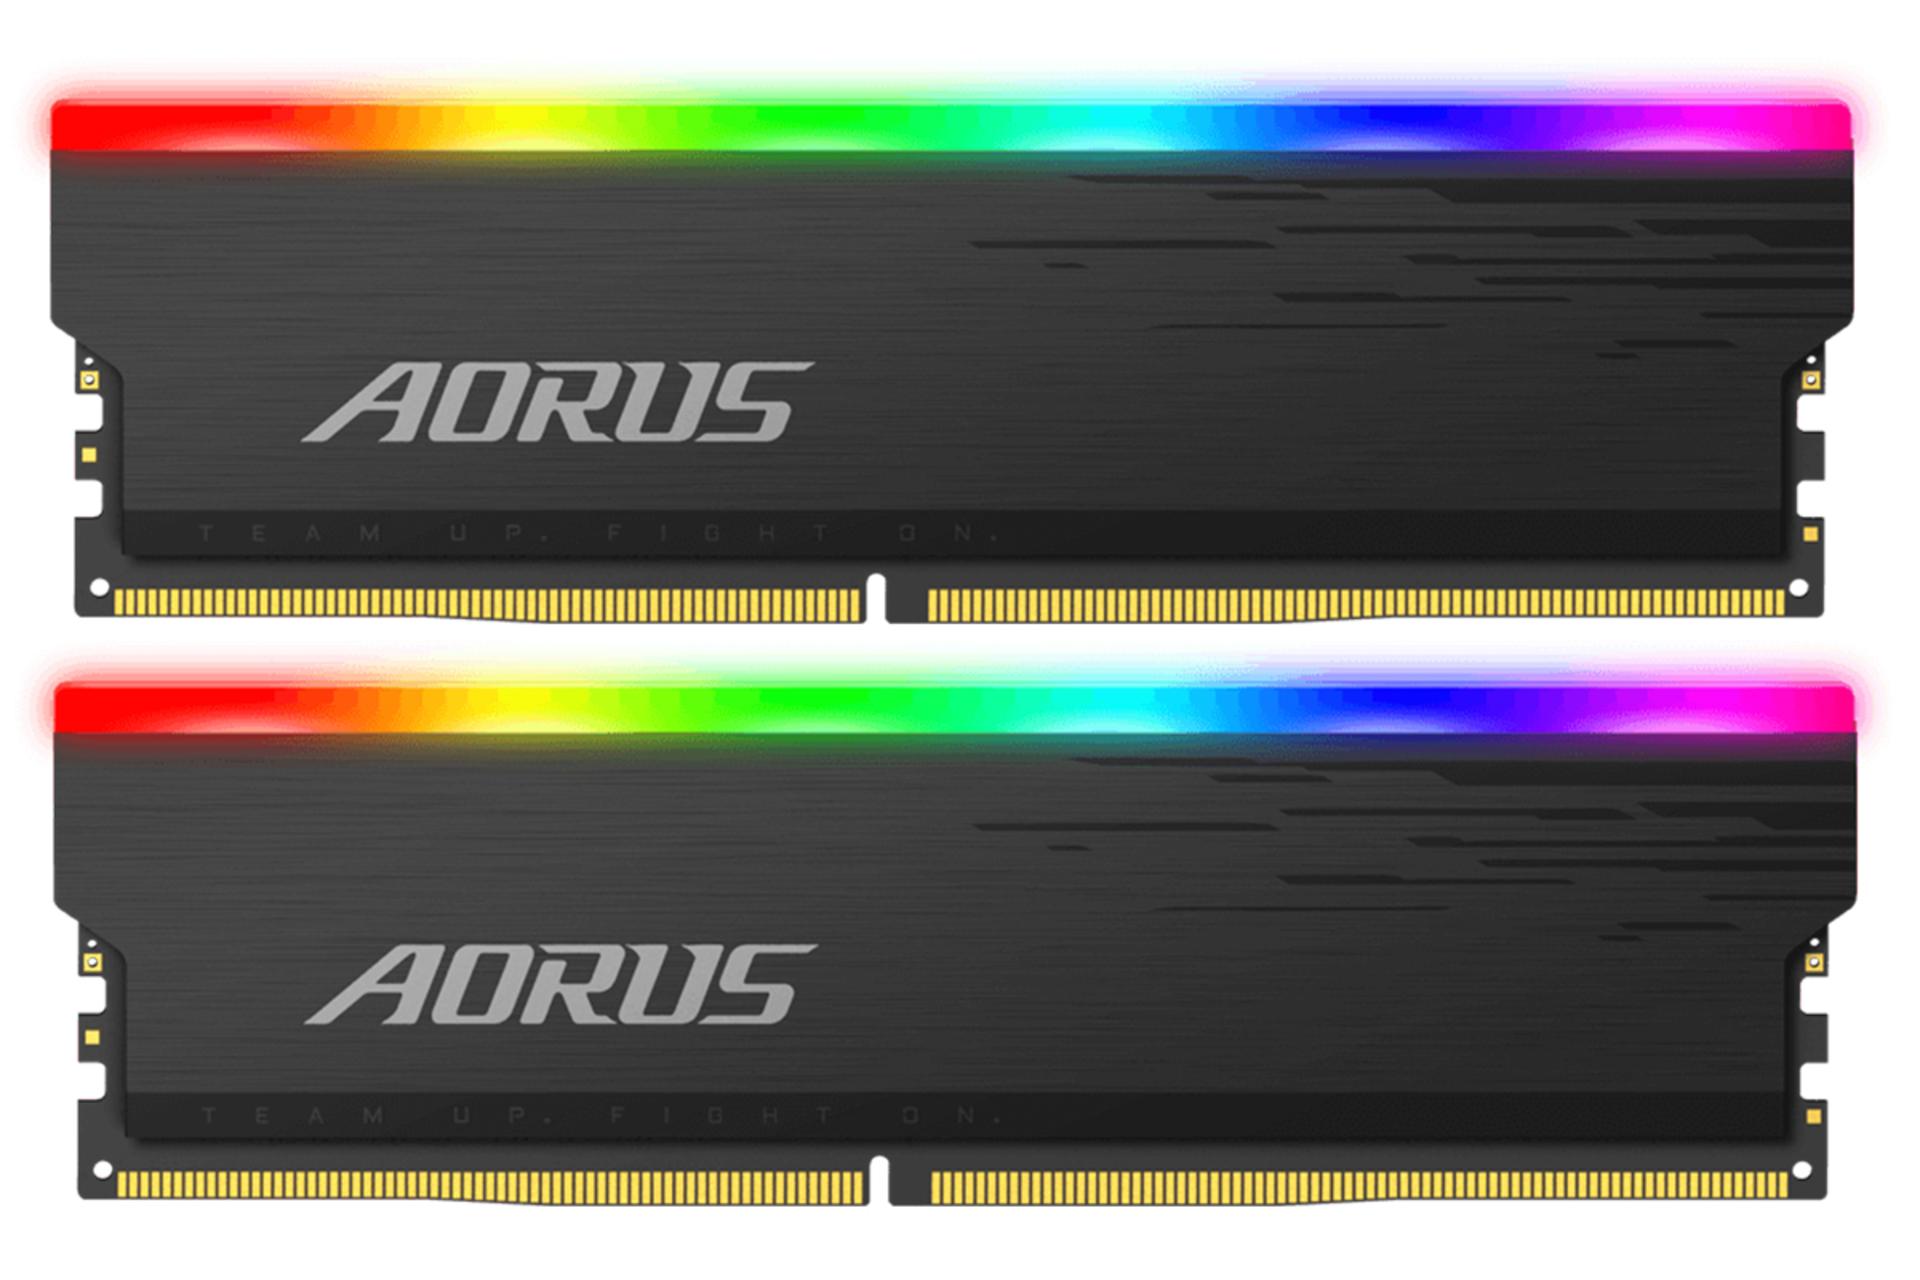 رم گیگابایت AORUS RGB ظرفیت 16 گیگابایت (2x8) از نوع DDR4-4400